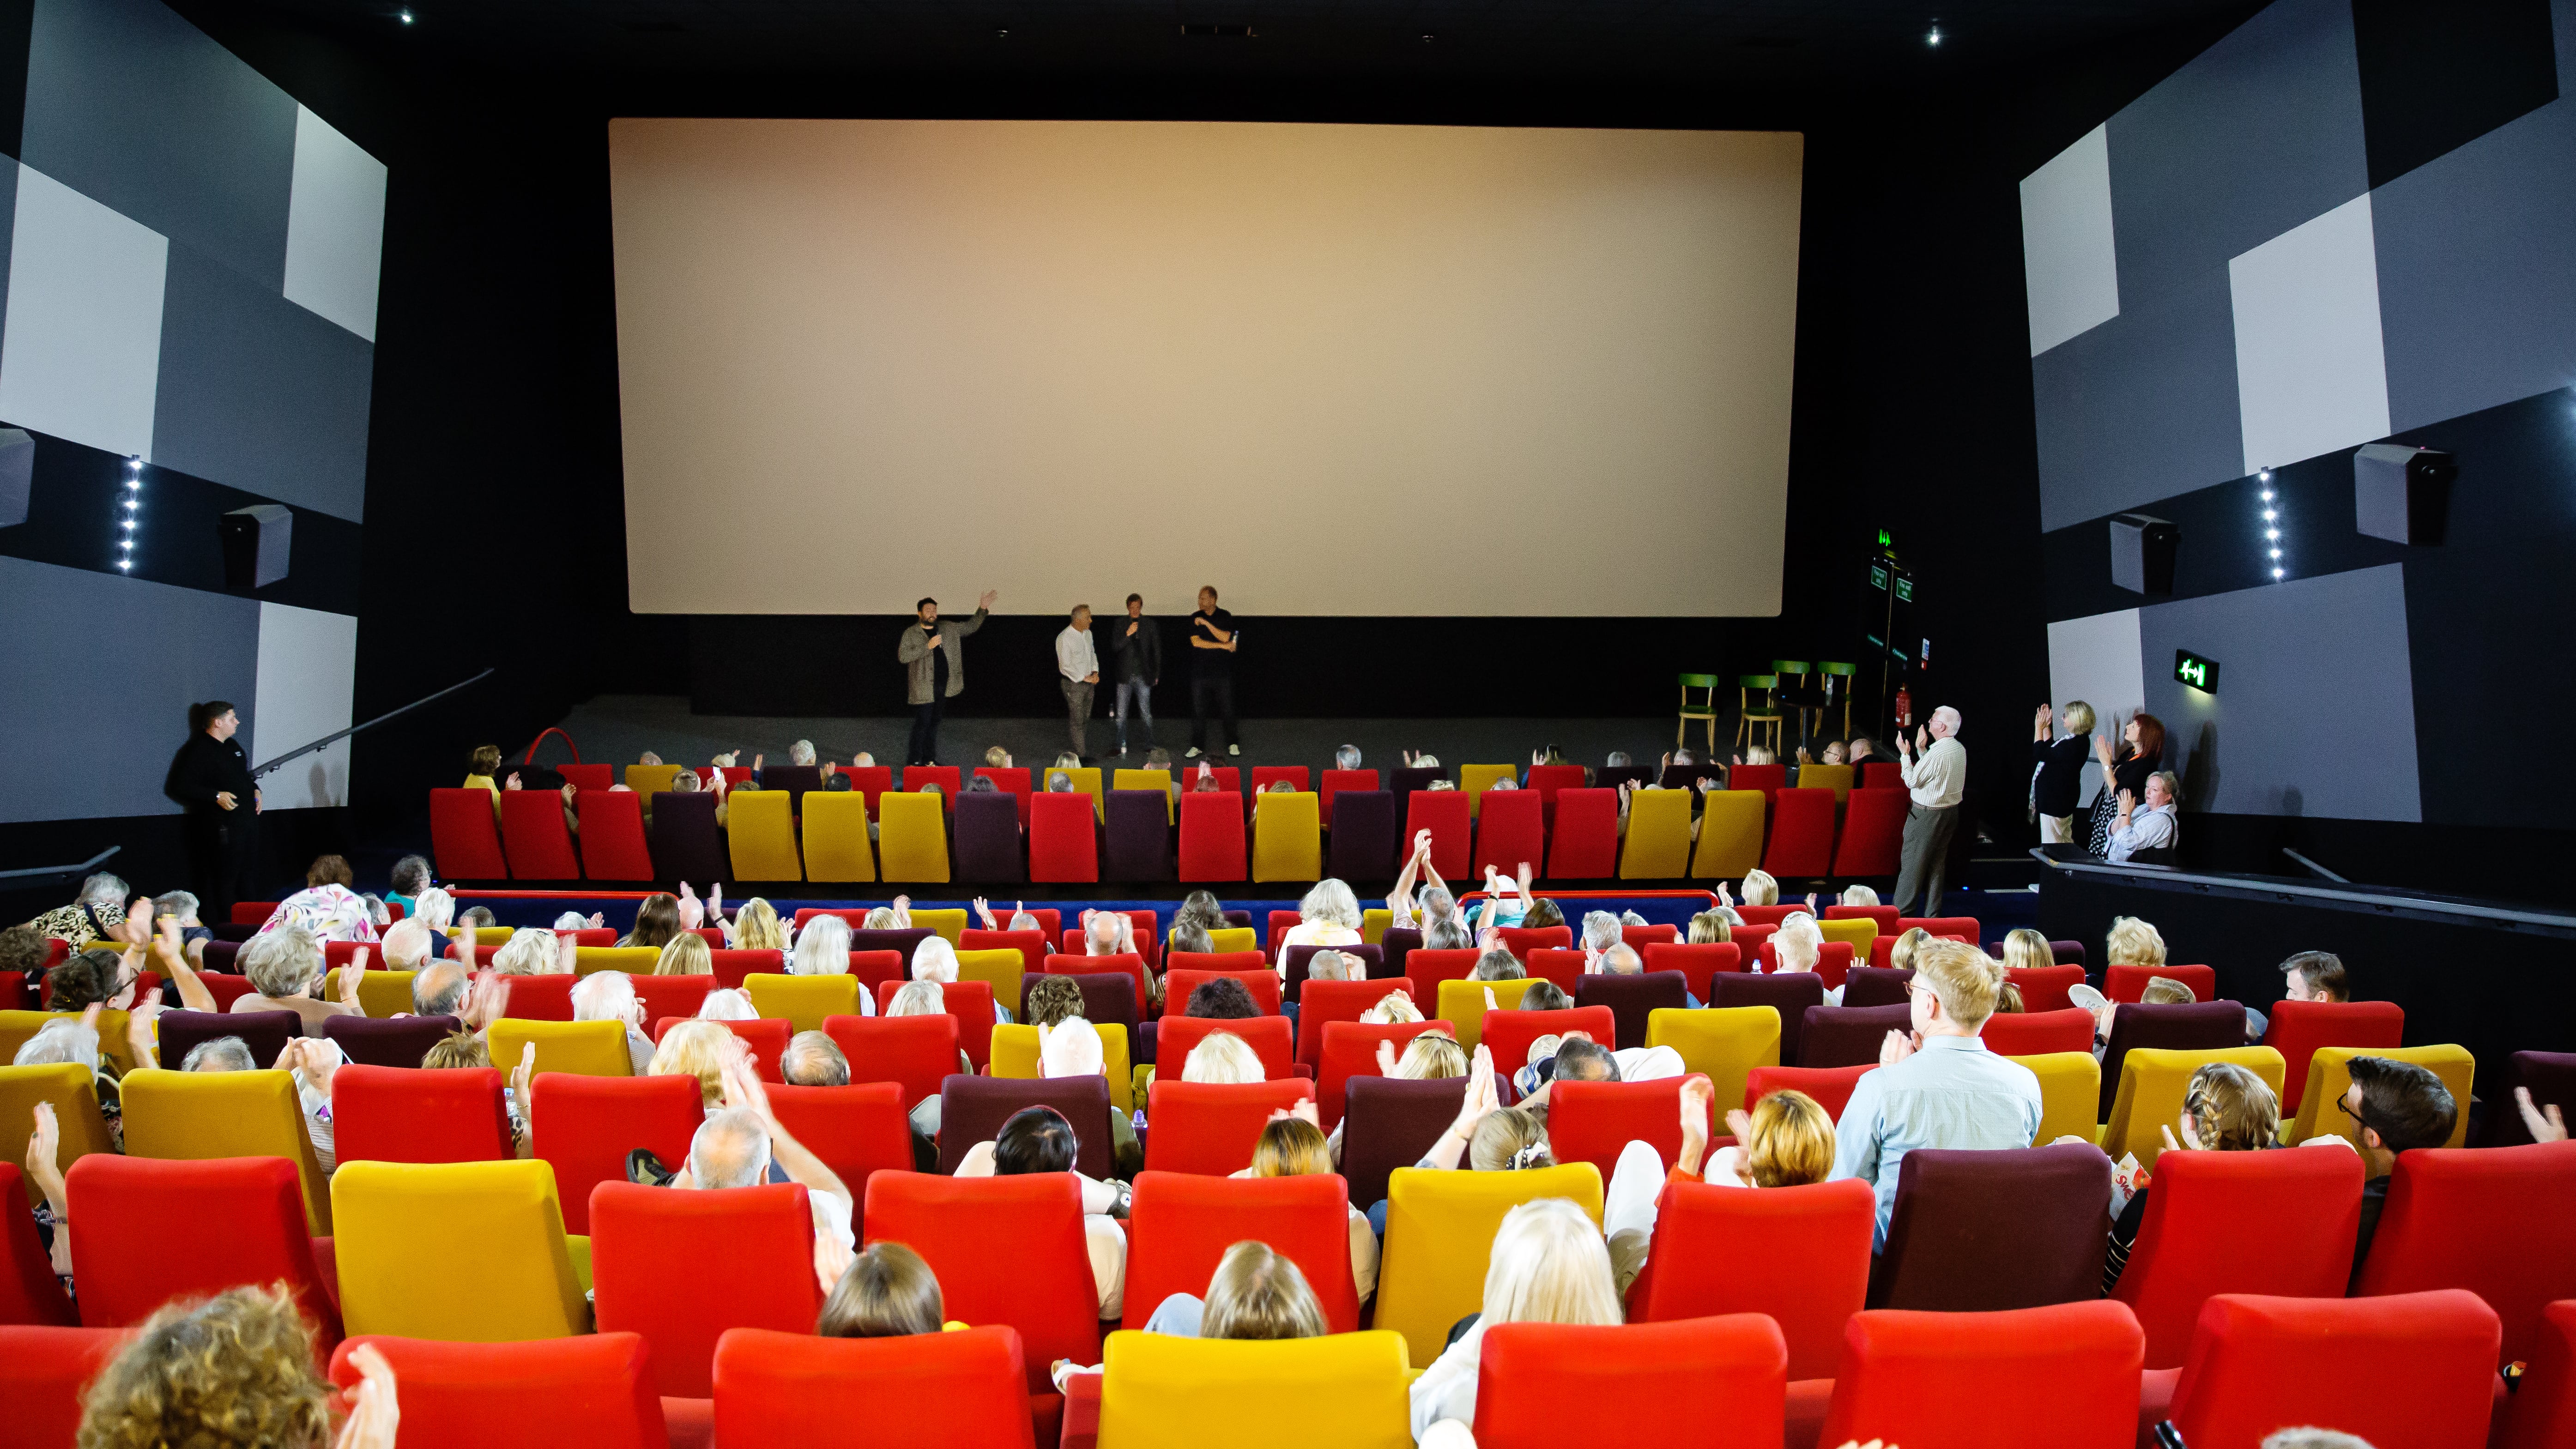 Møde universitetsområde Gutter Screen 3 - The Light Cinema - New Brighton - Event Venue Hire - Tagvenue.com